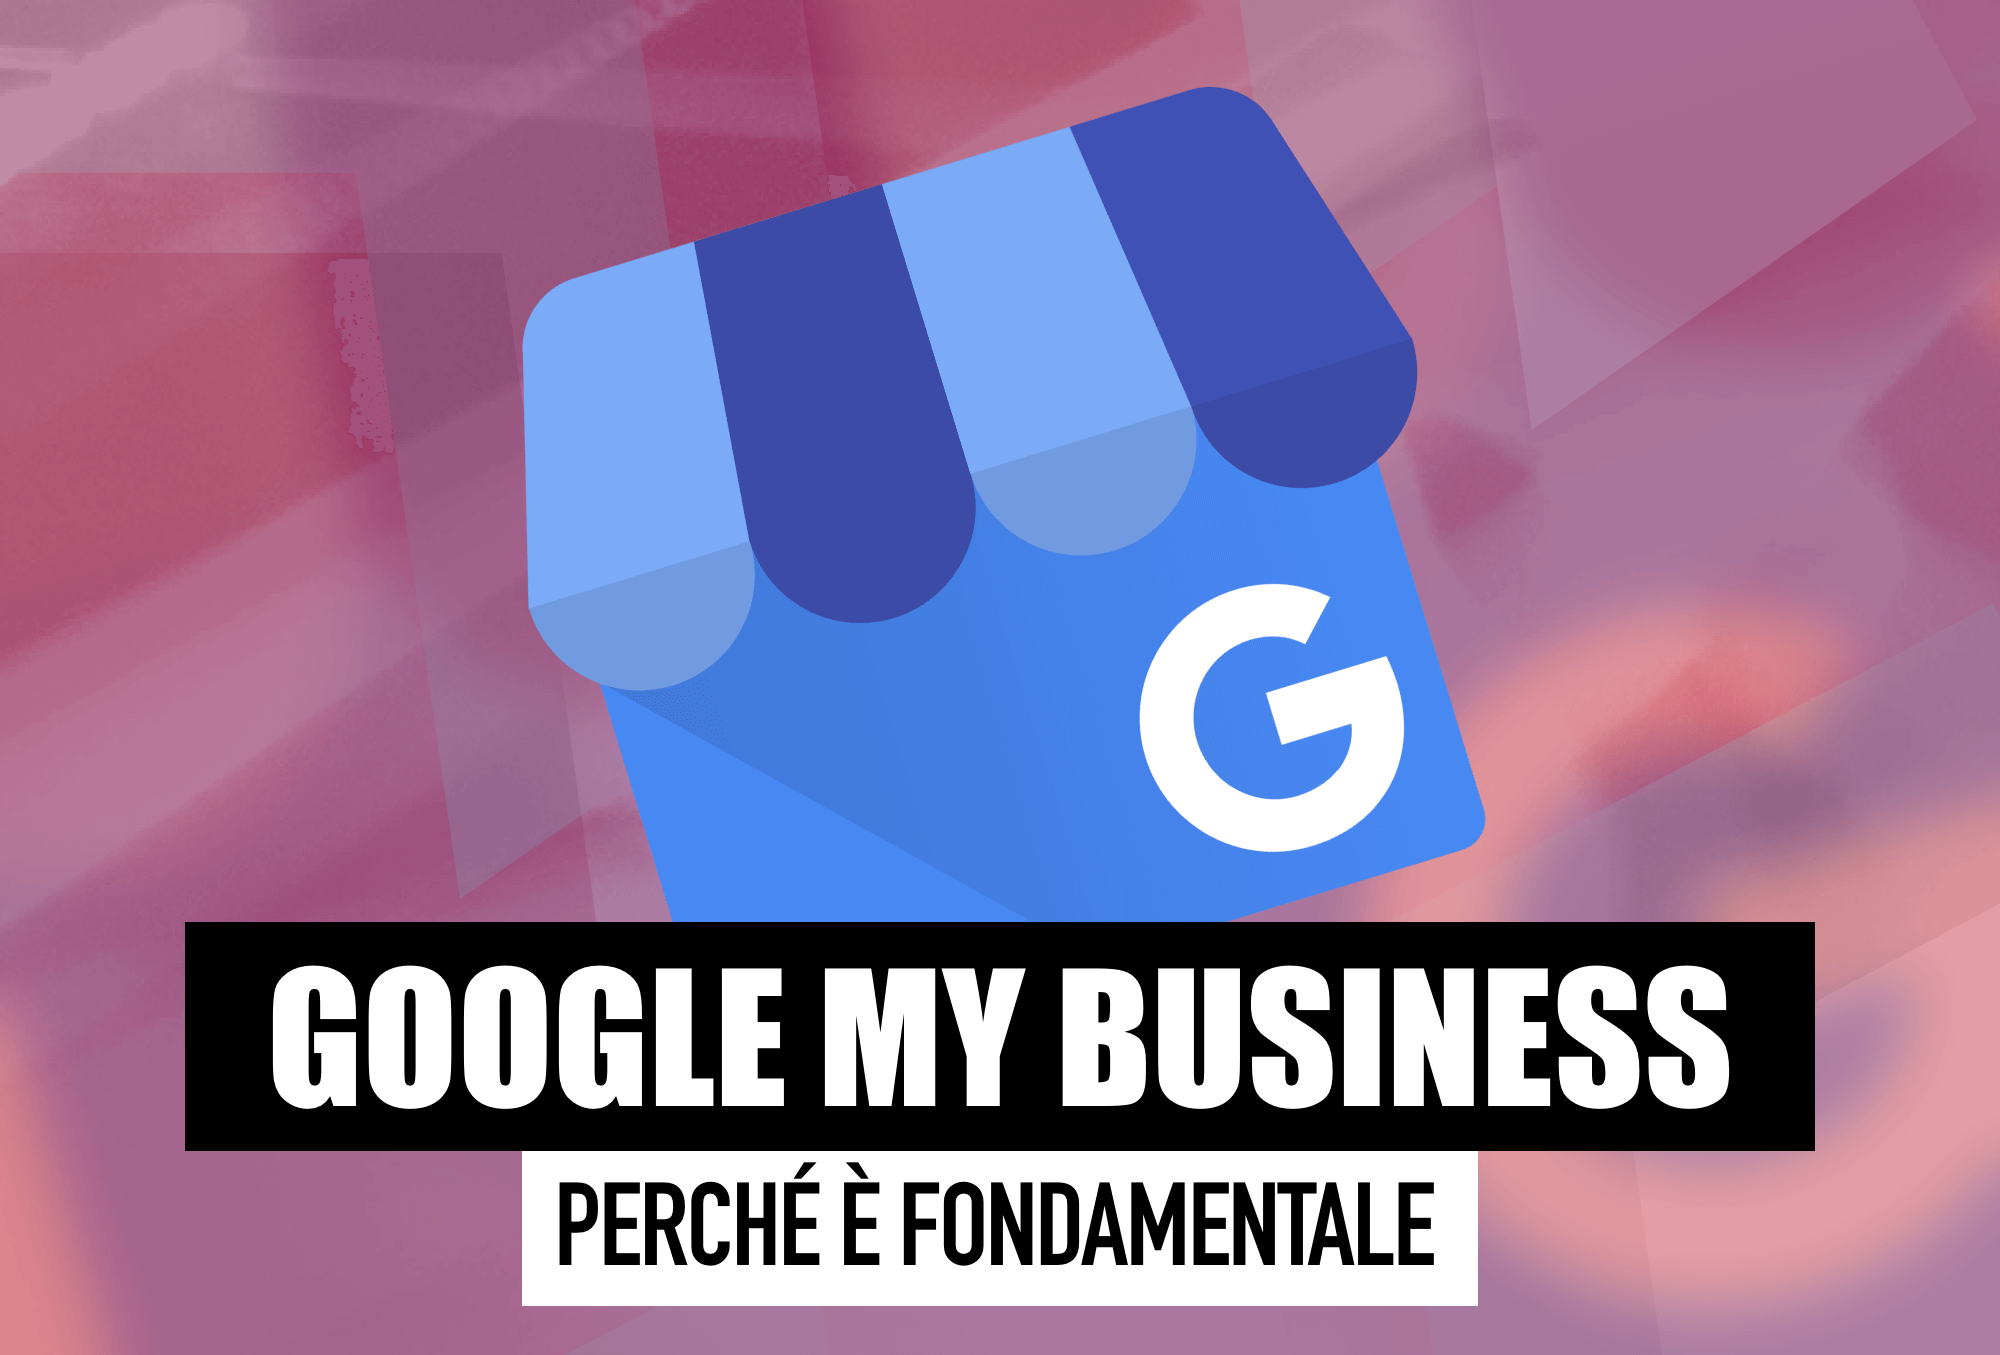 Google My Business: un profilo curato su GMB può essere molto importante per la tua azienda, lo sapevi? Leggi l'articolo per scoprire perché.